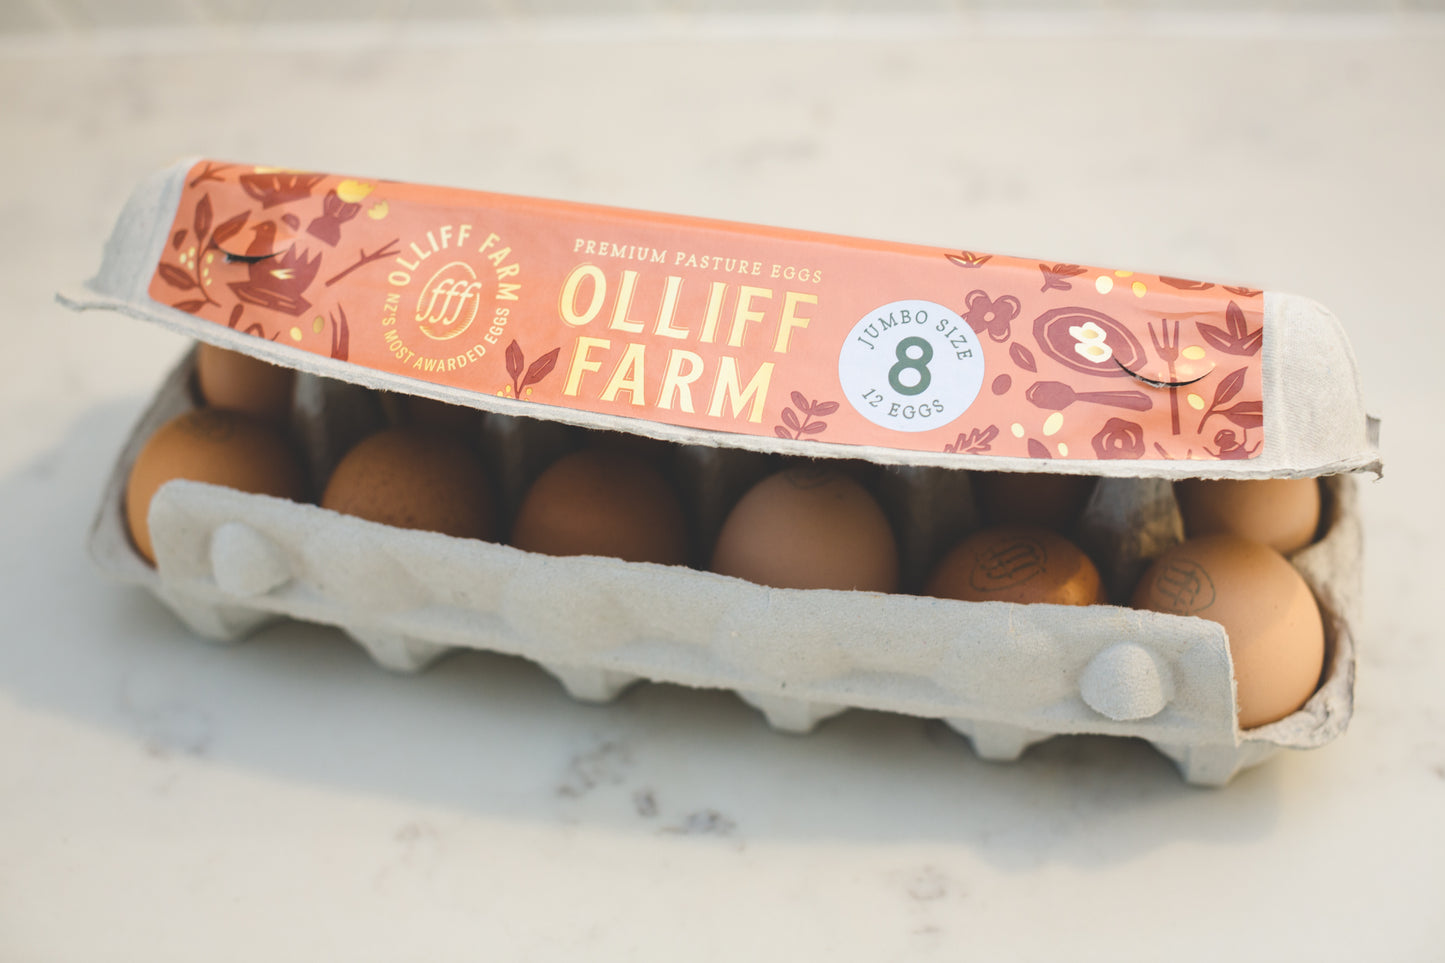 Olliff Farm - 12 x Premium pasture eggs.